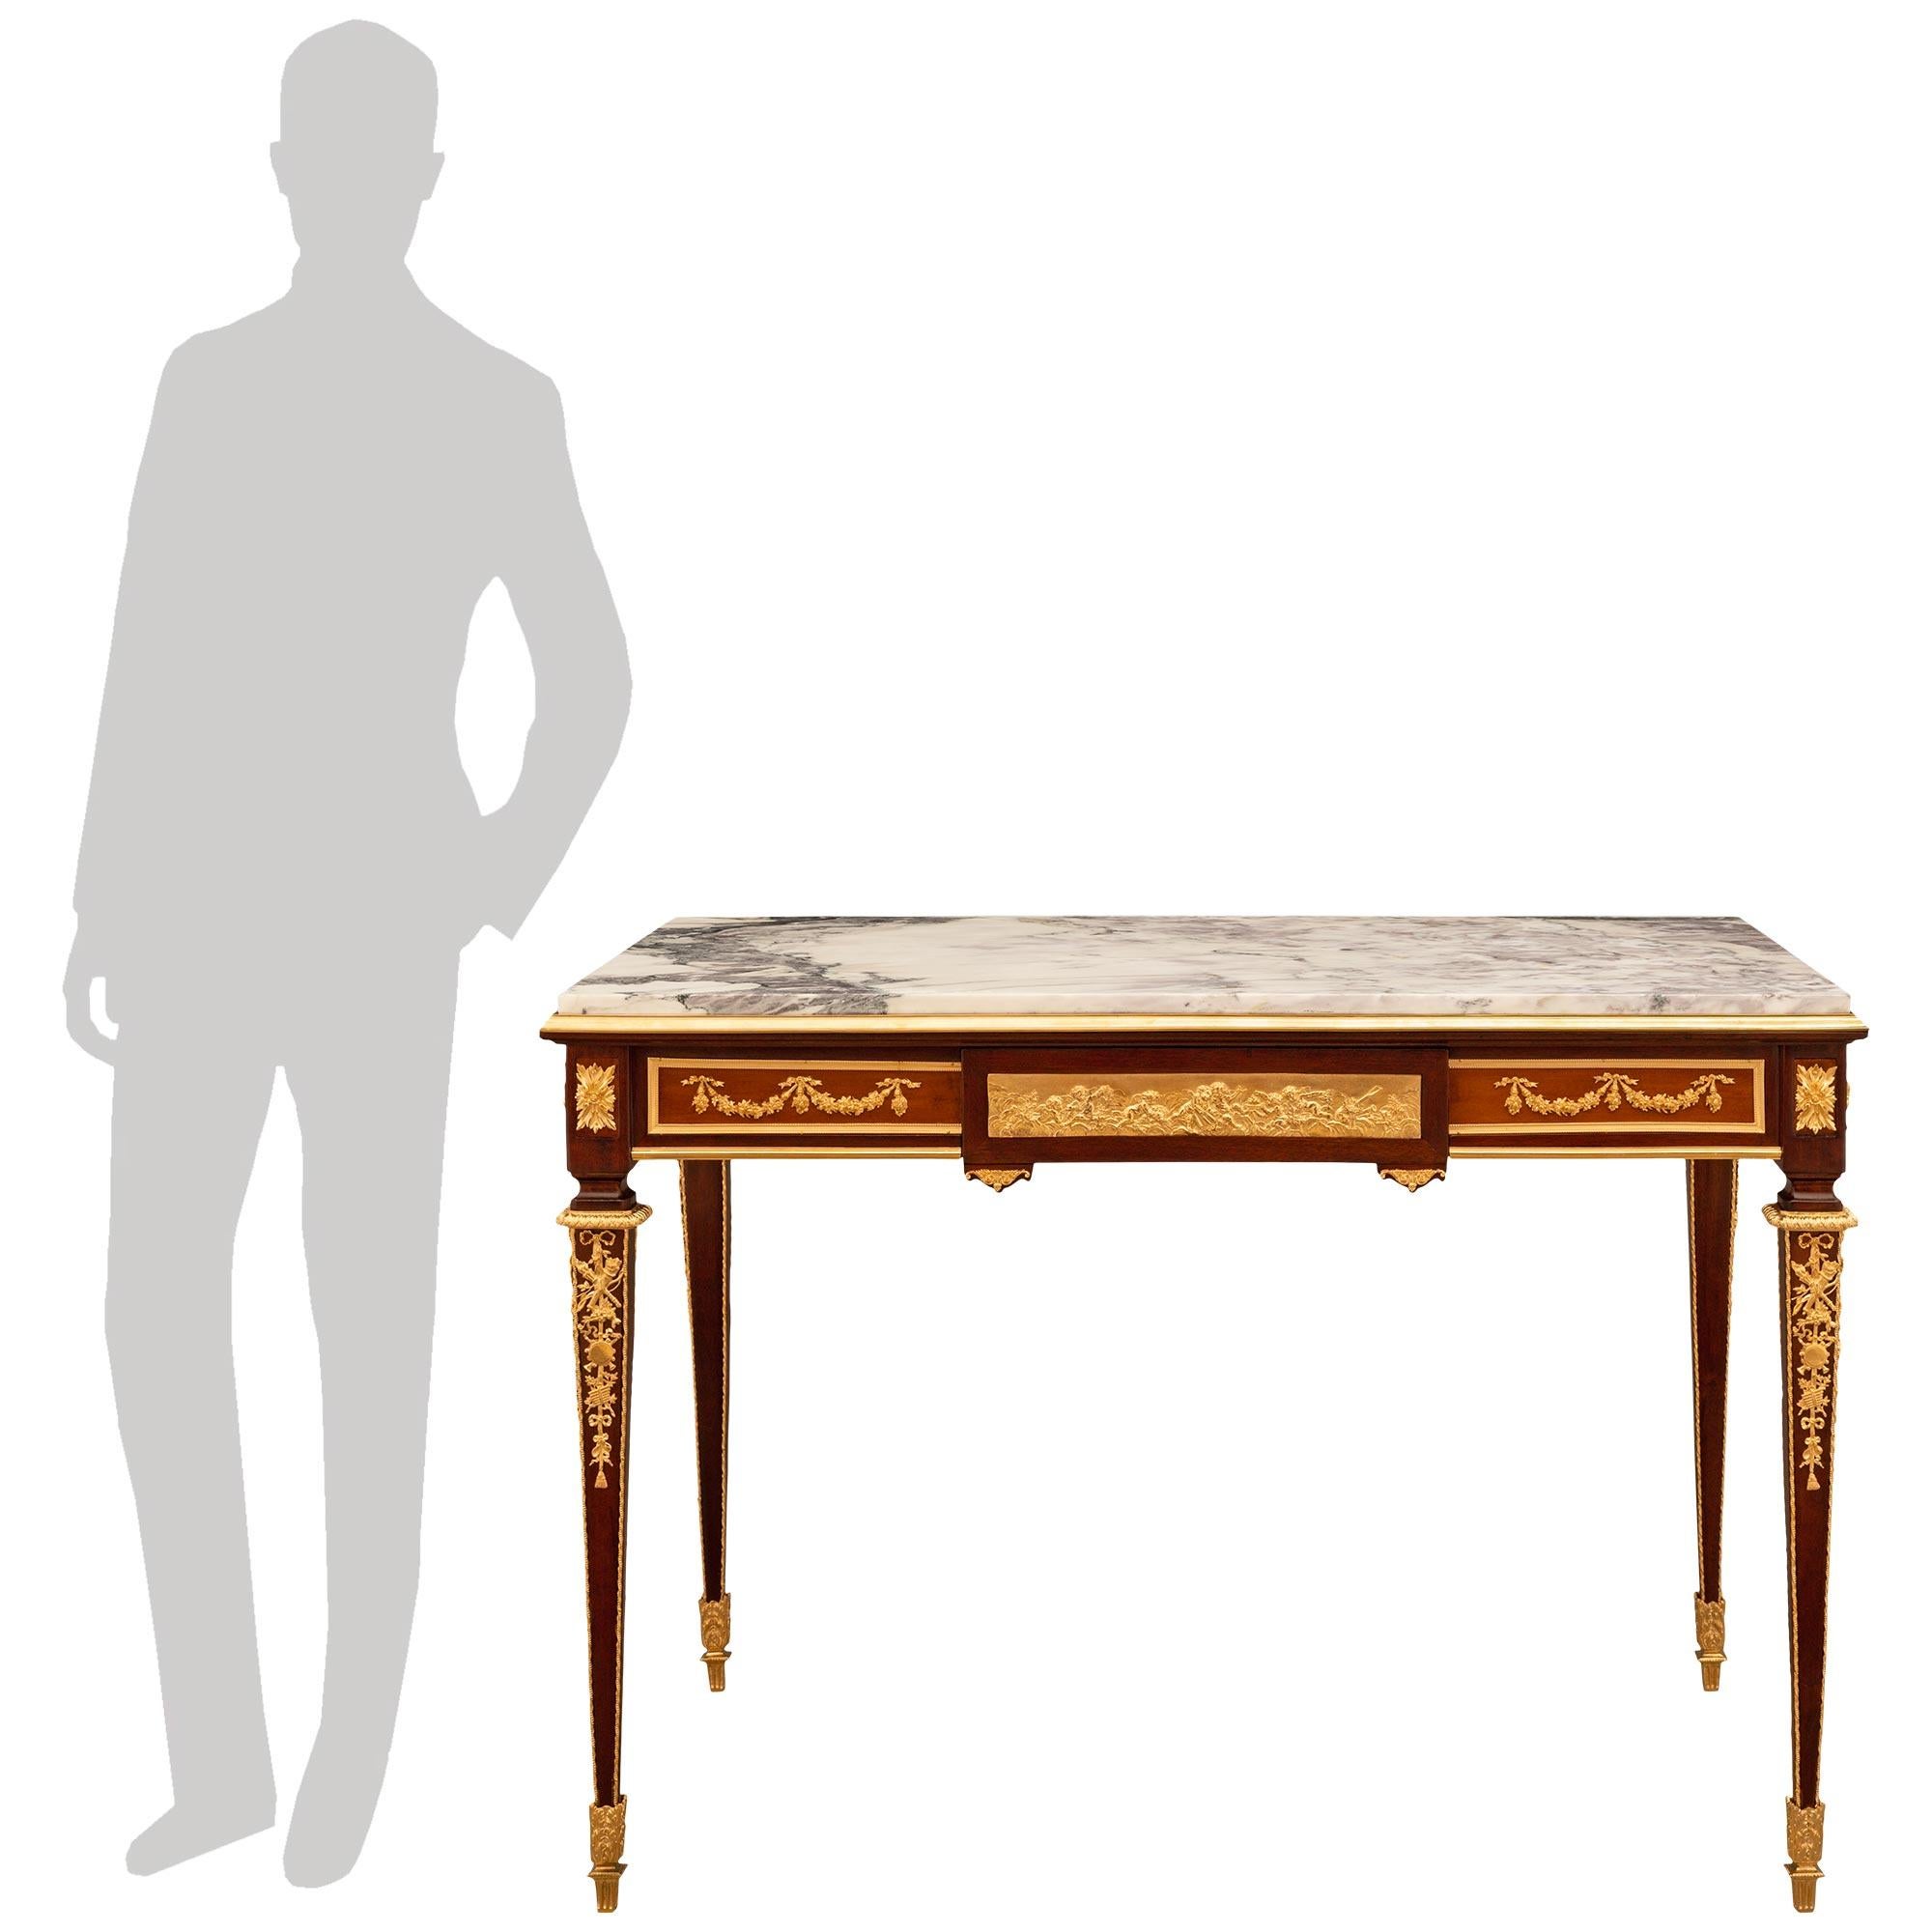 Étonnante table centrale/de bureau de haute qualité en acajou, bronze doré et marbre Rosalia, d'époque Louis XVI et Belle Époque, attribuée à François Linke. Le bureau repose sur d'élégants pieds fuselés carrés dotés de magnifiques sabots en bronze